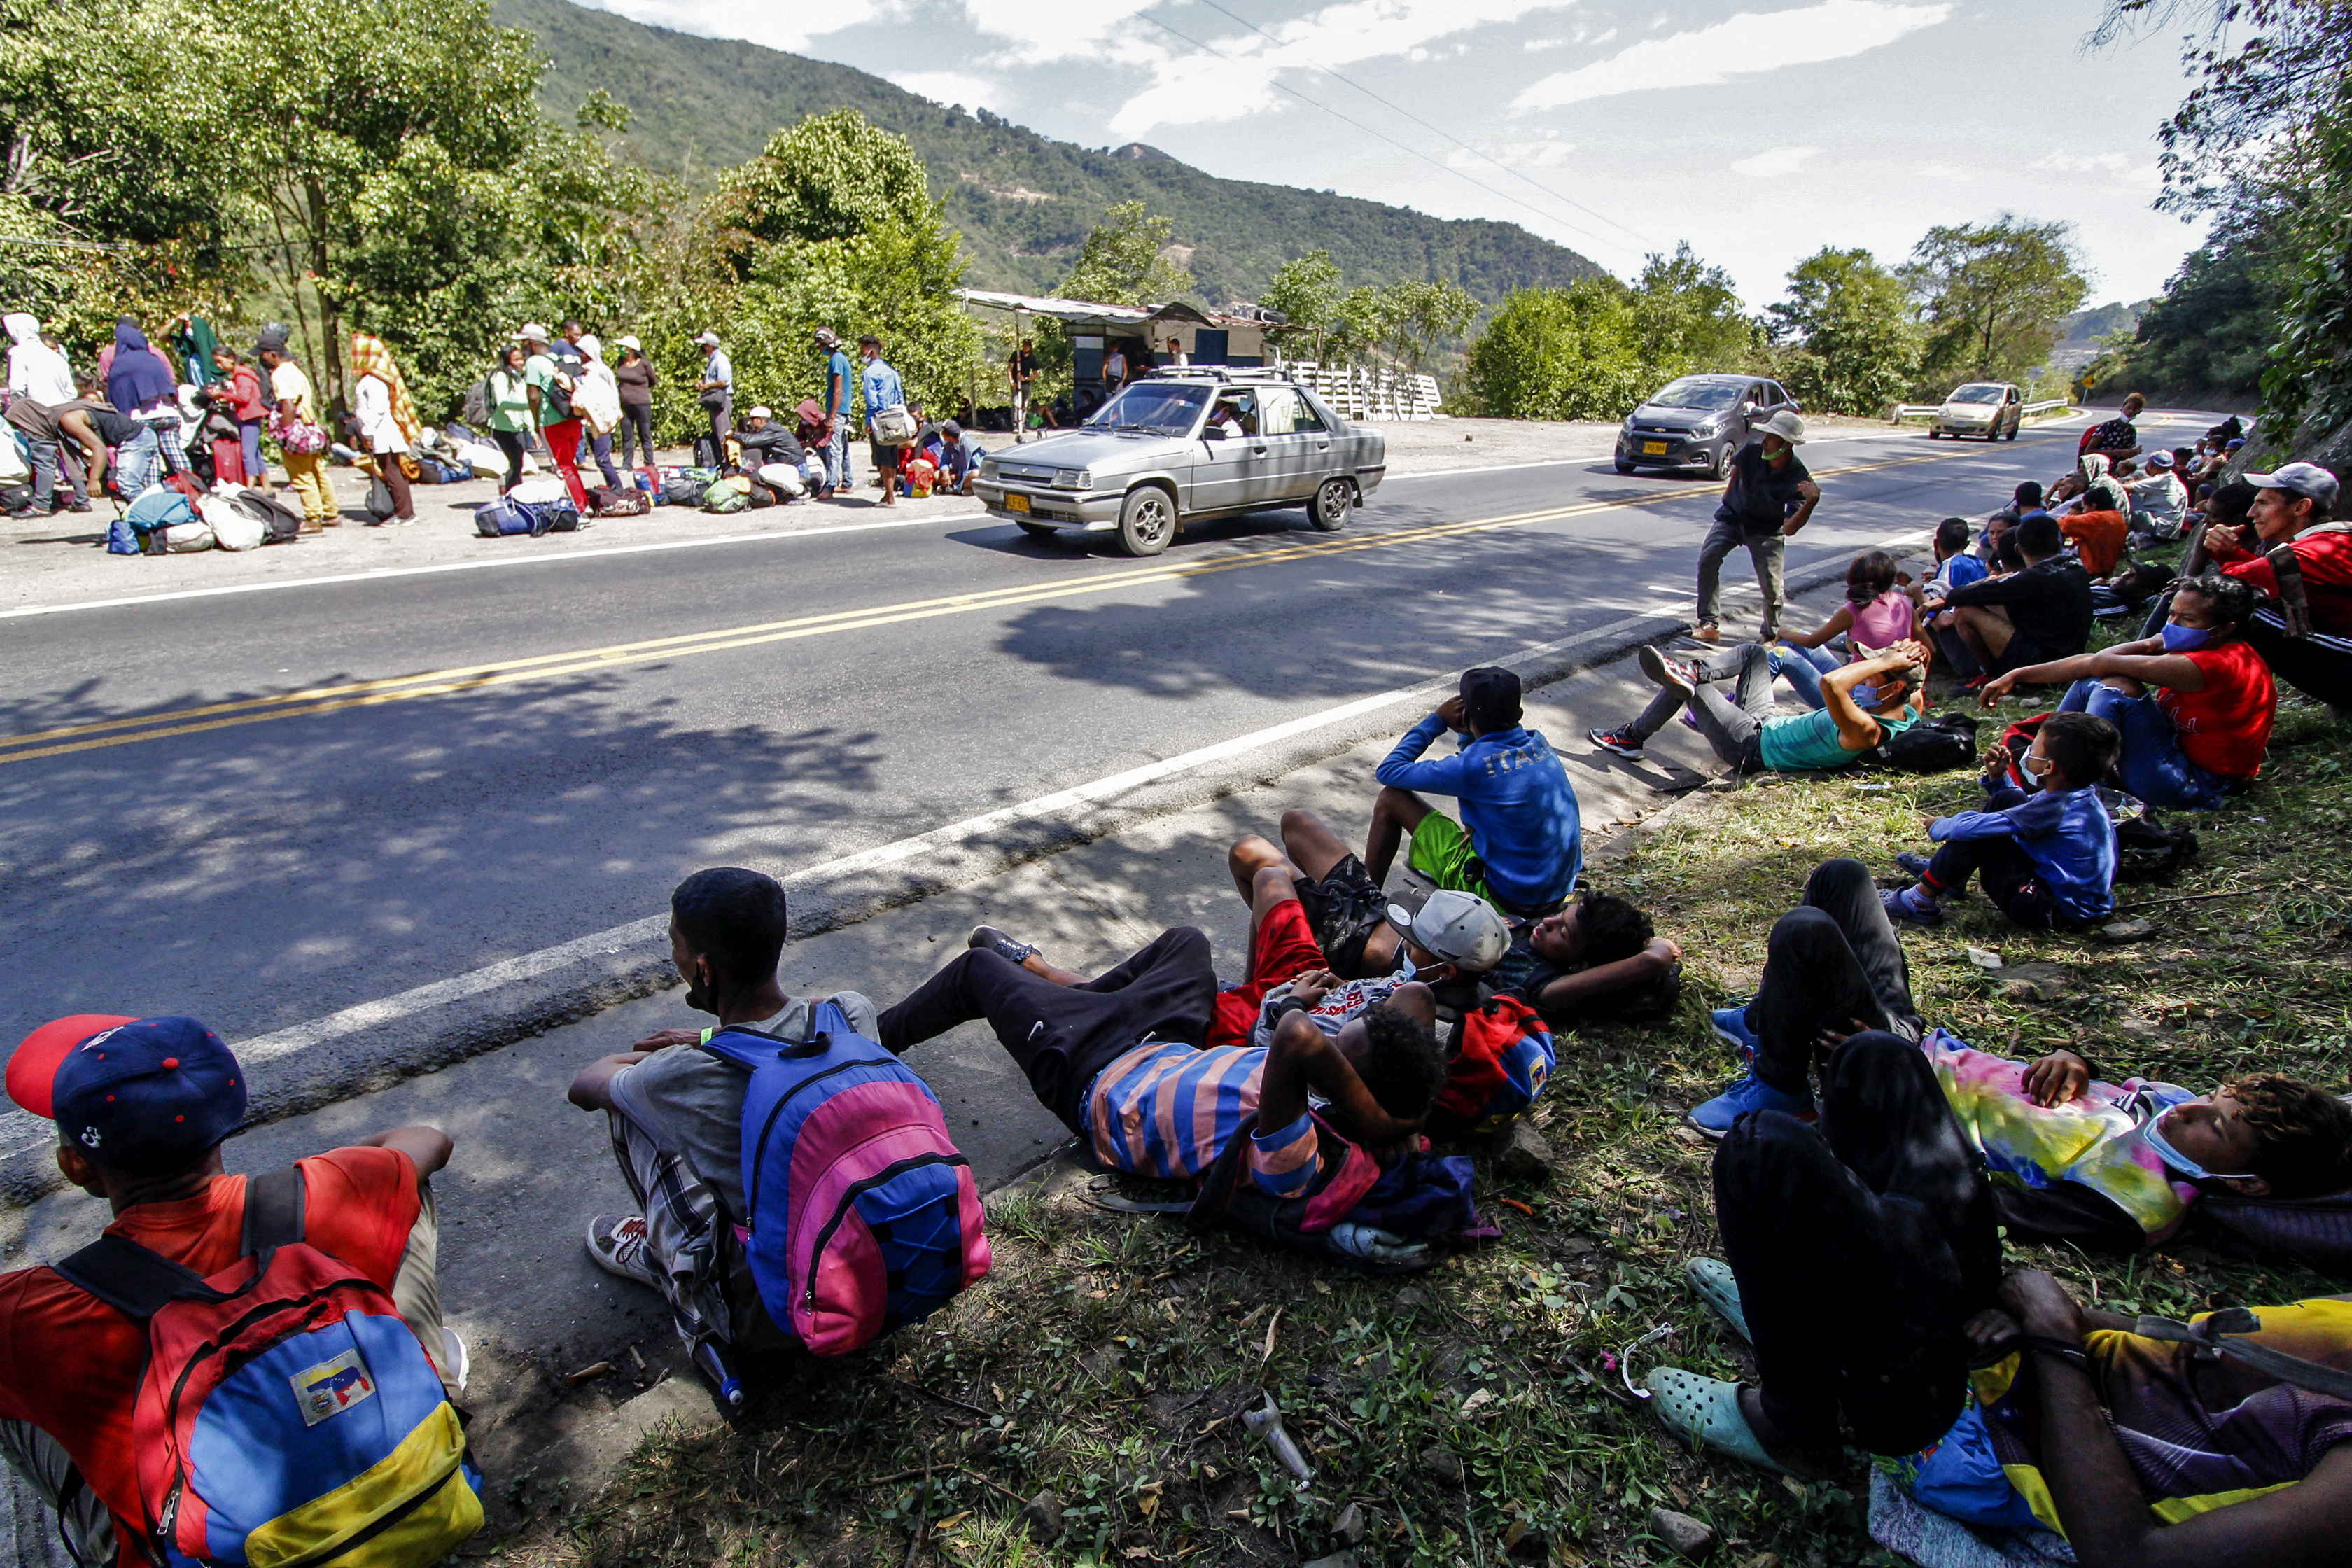 Irlanda donará dos millones de euros para atender la crisis humanitaria en Venezuela